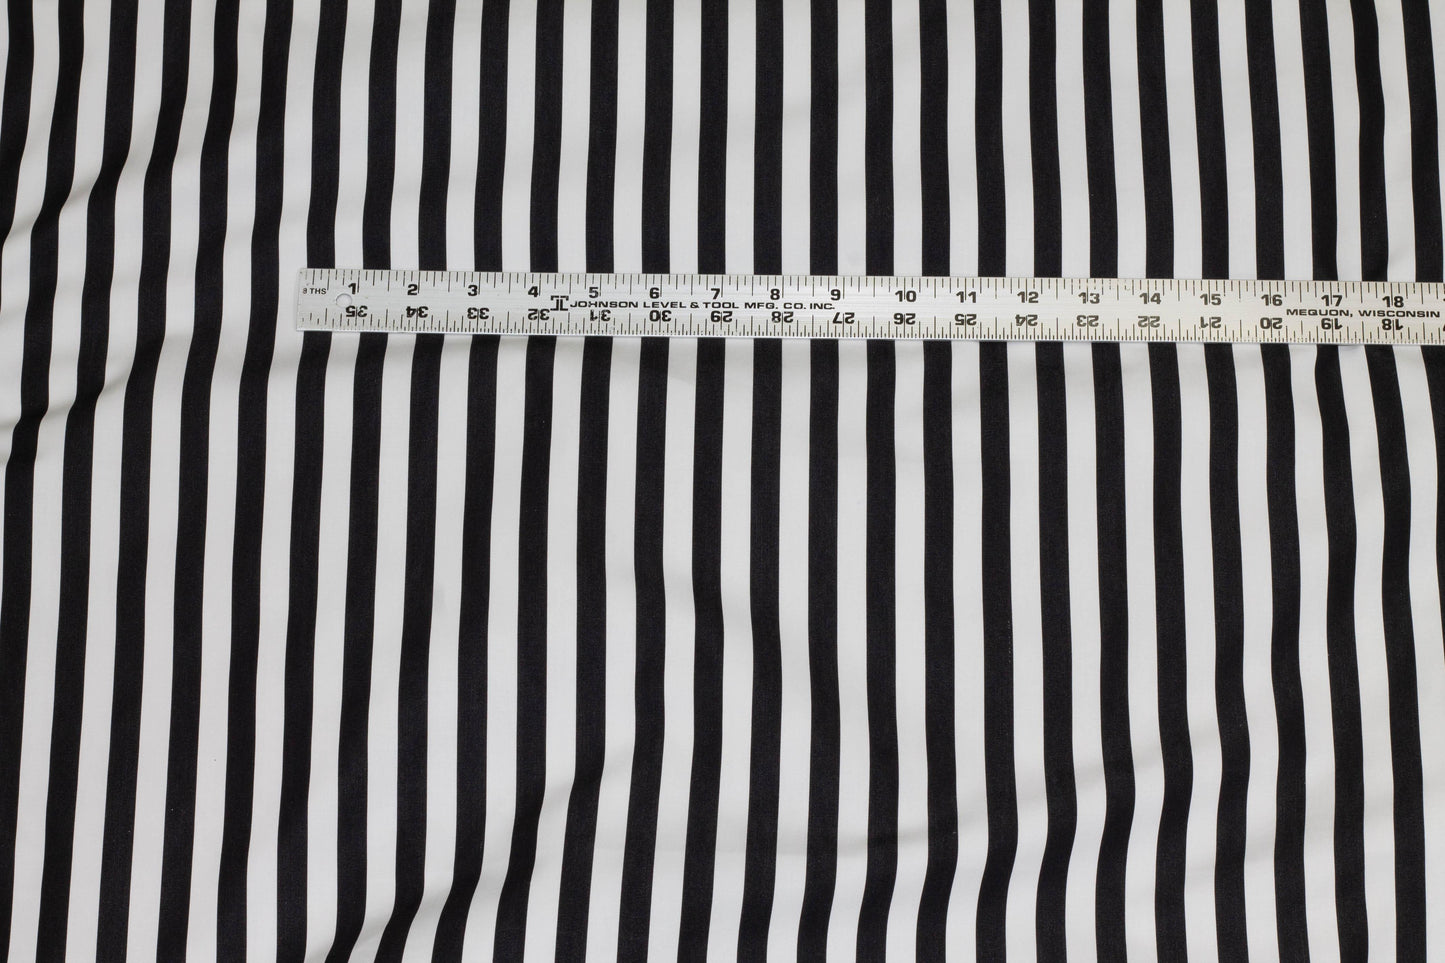 Black cotton sando with white stripe